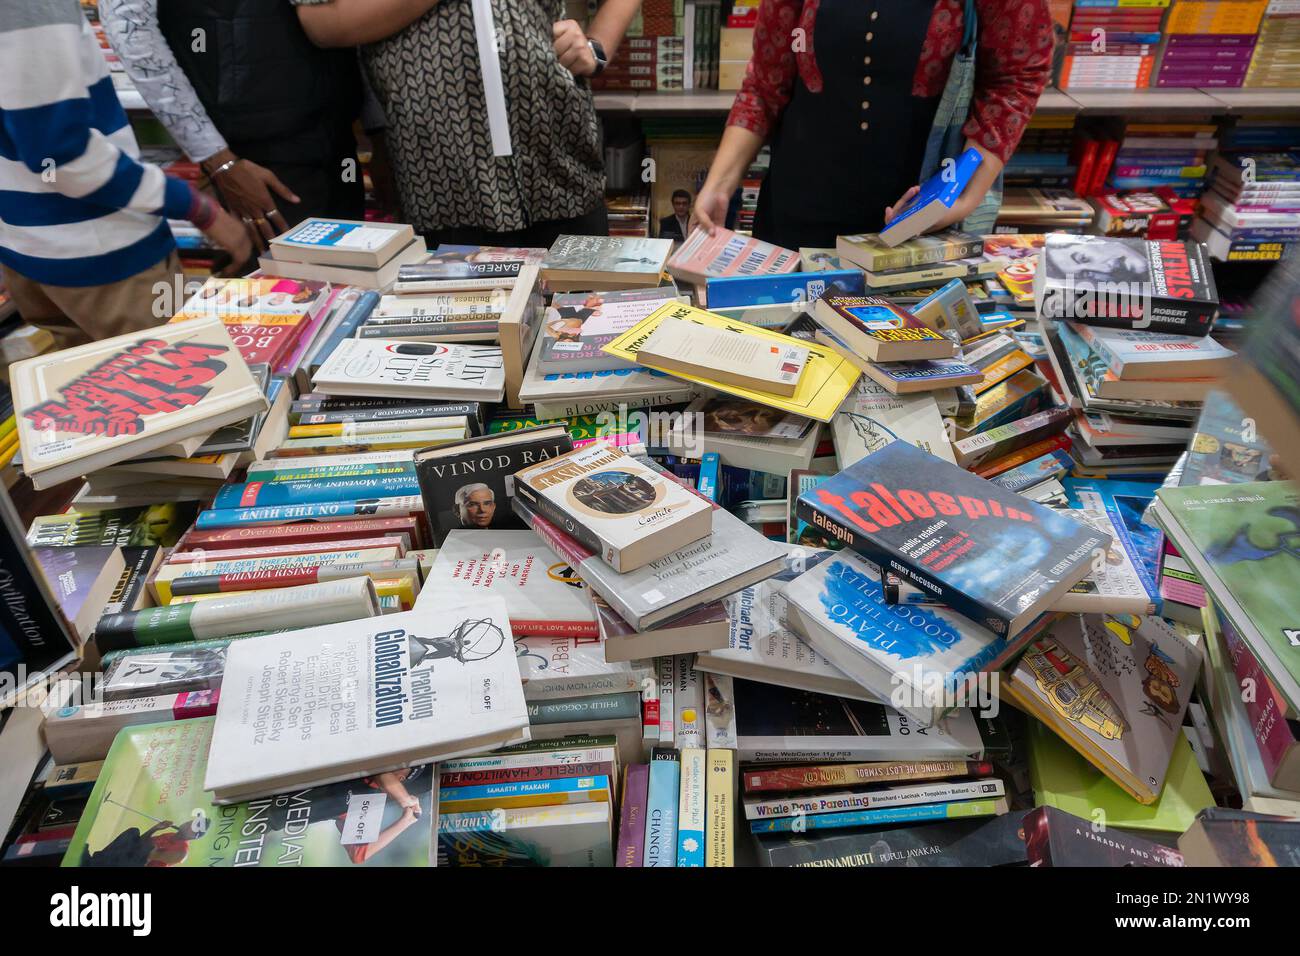 Calcutta, Bengala Occidentale, India - 2 febbraio 2020 : libri in mostra. Gli amanti del libro di tutte le età, uomini e donne, sono alla ricerca dei loro libri preferiti. Foto Stock